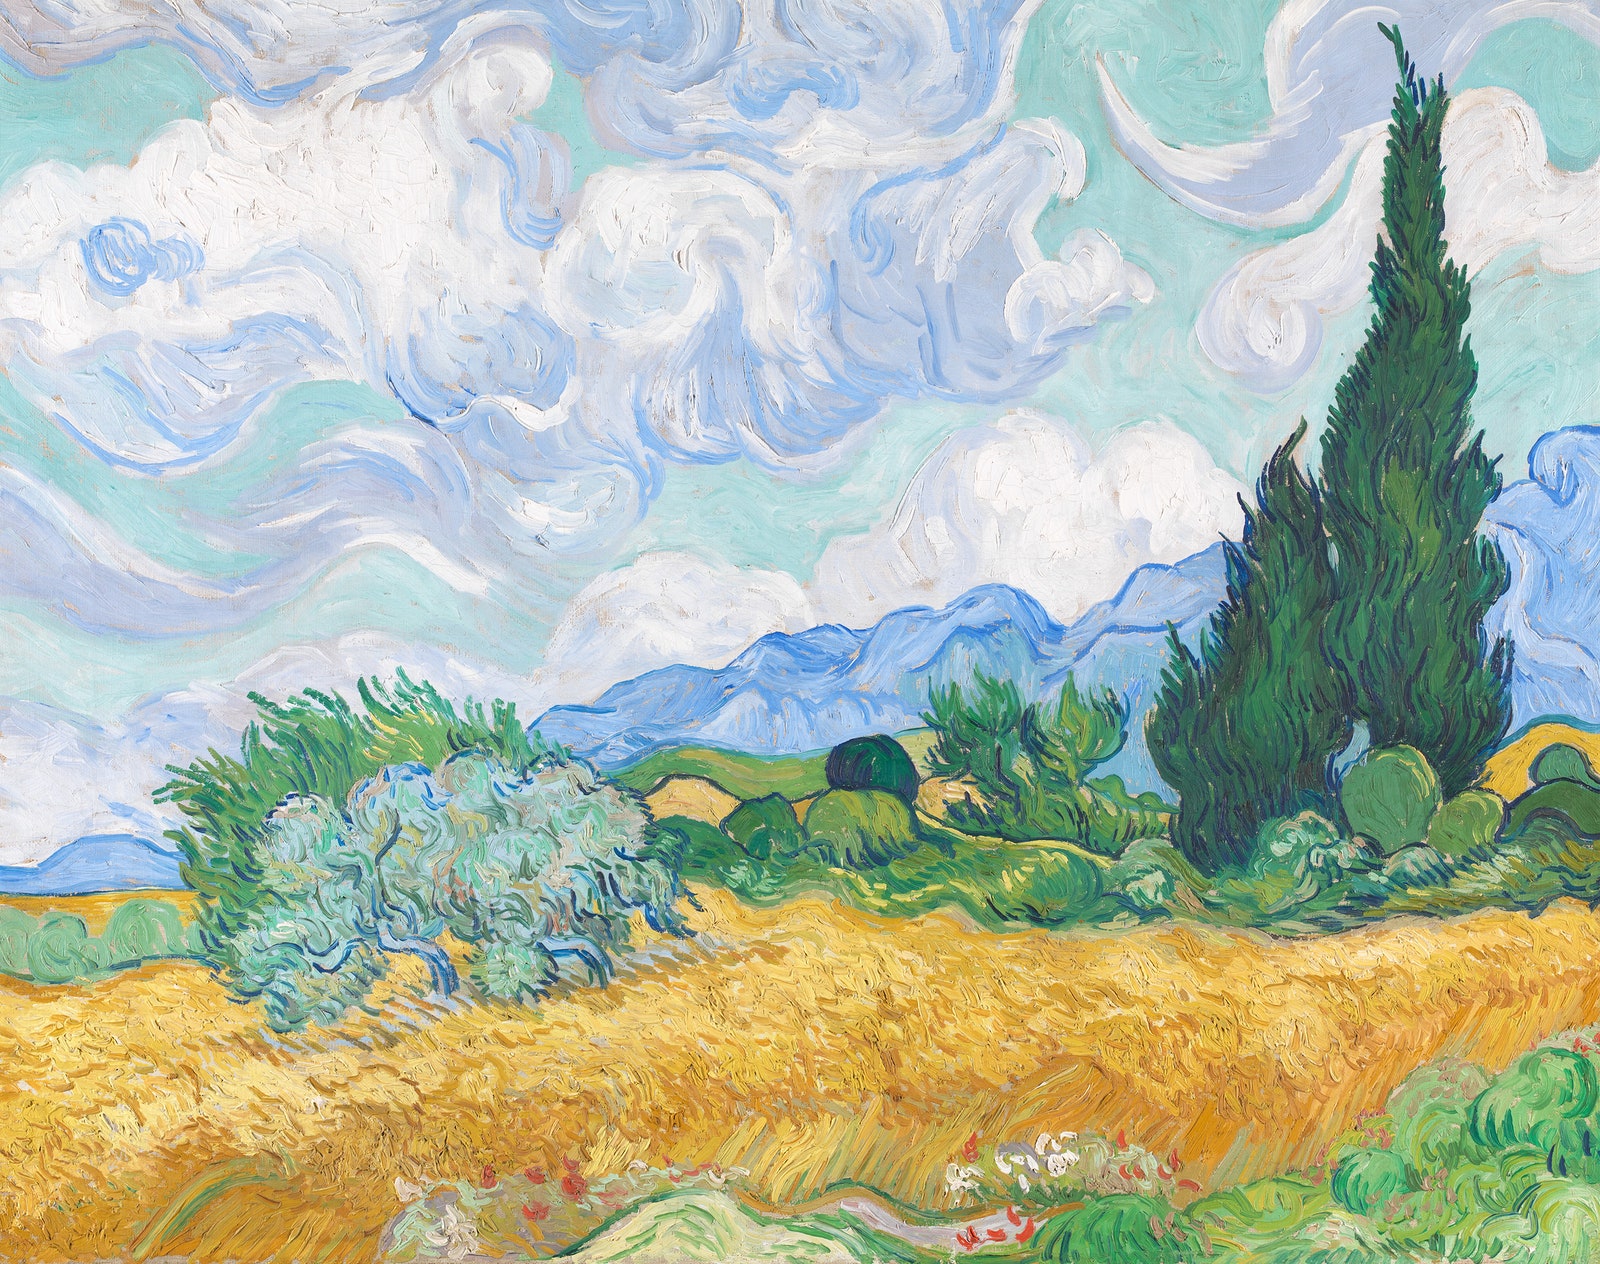 Gemälde von Vincent van Gogh mit einer Zypresse in einem Weizenfeld.